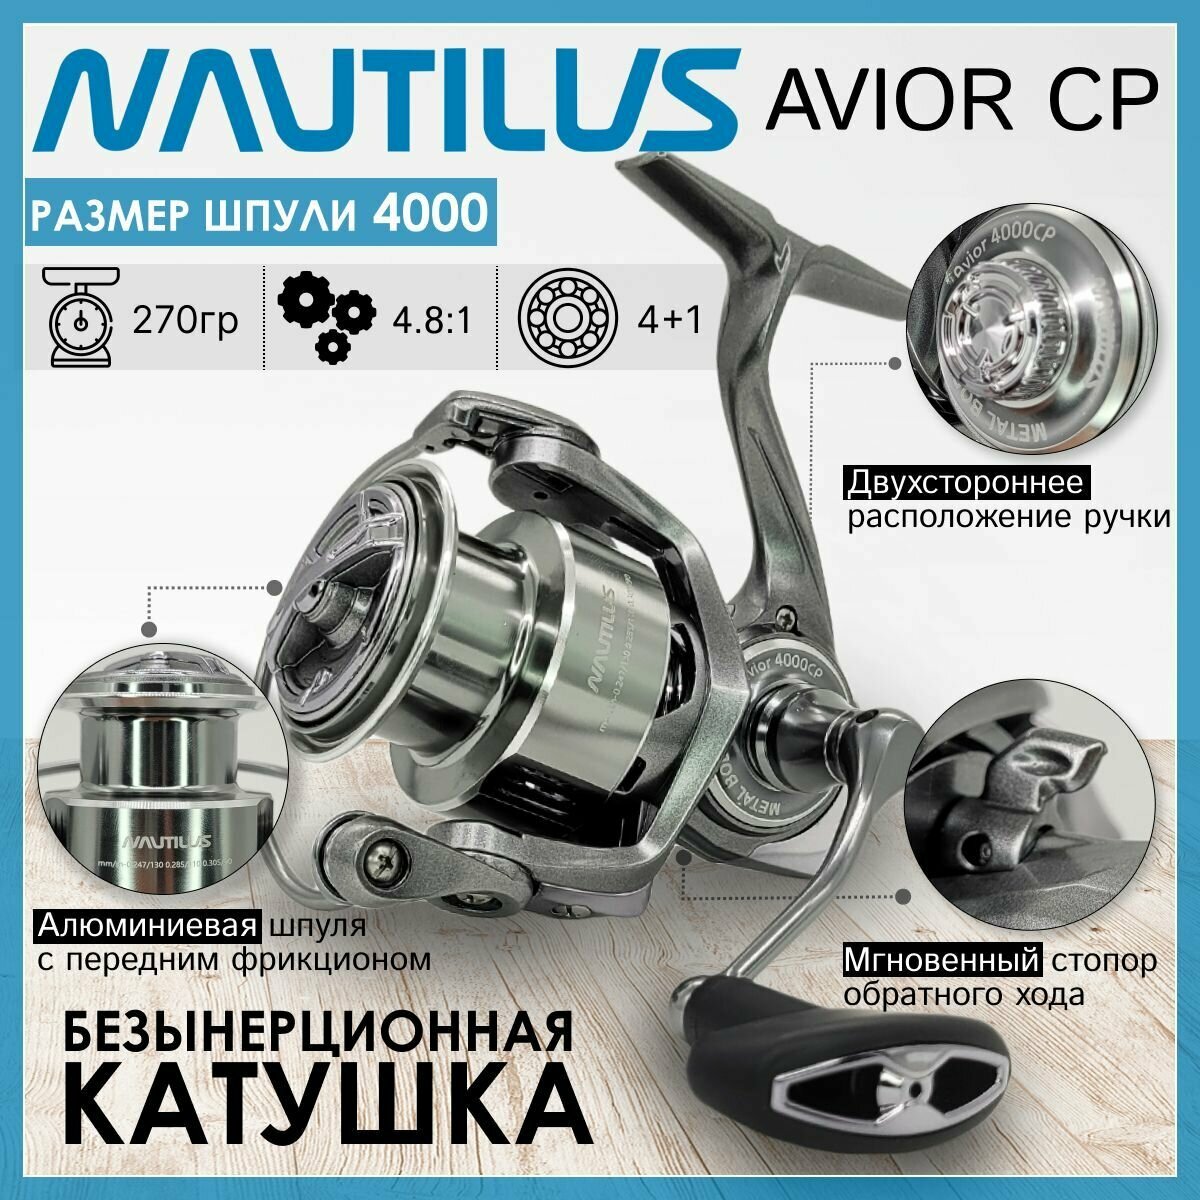 Катушка Nautilus AVIOR 4000-CP, с передним фрикционом